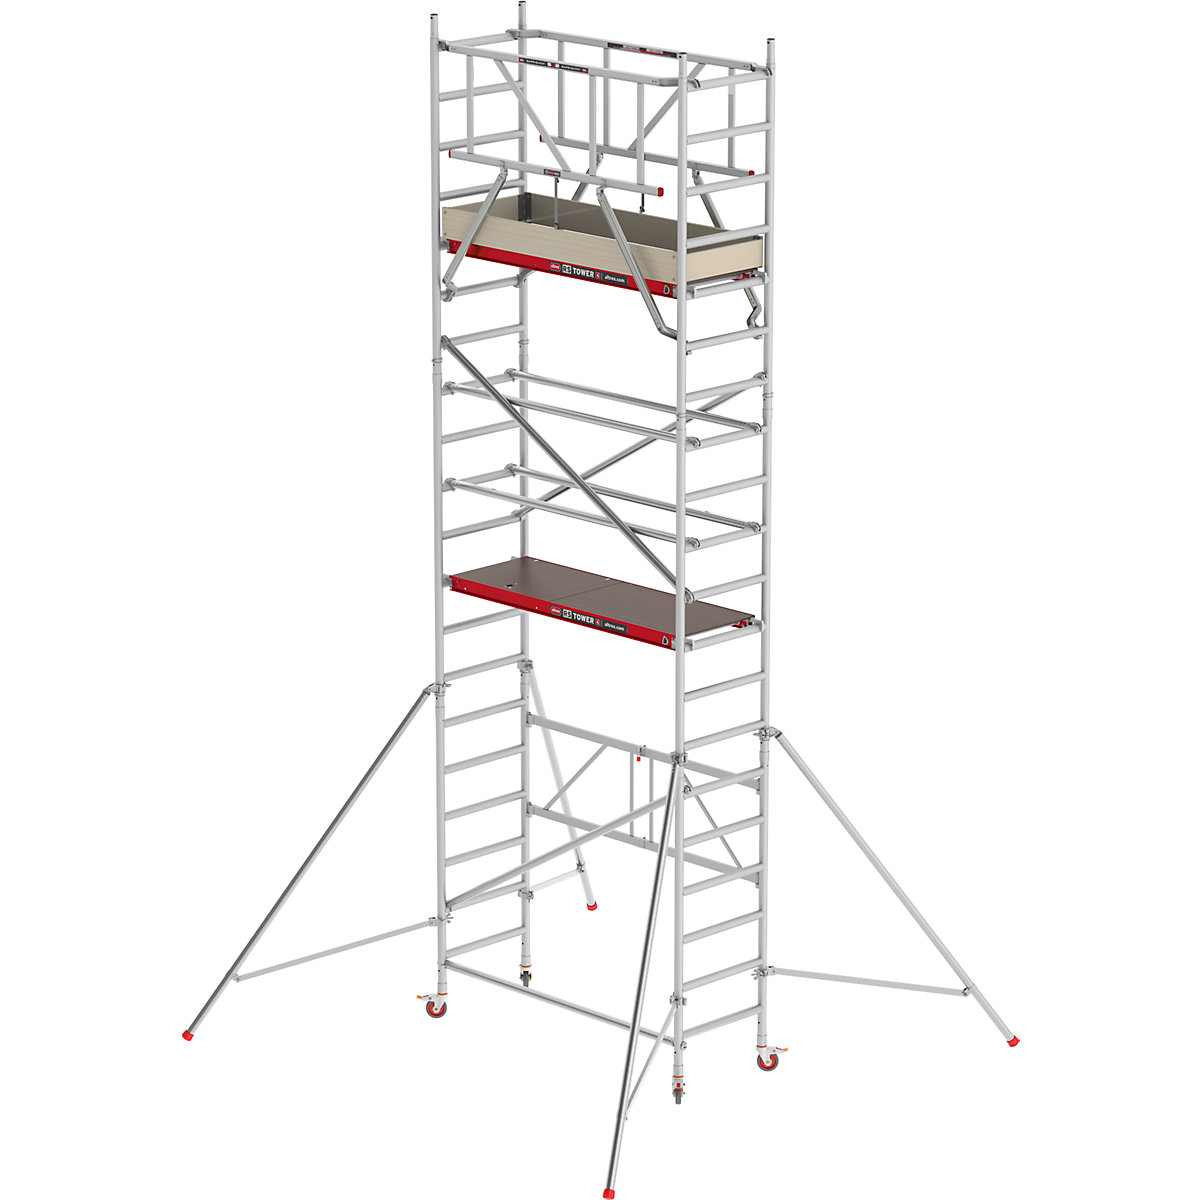 Lešení pro místnosti RS 44-POWER – Altrex, dřevěná plošina, délka 1,85 m, pracovní výška 6,80 m-8